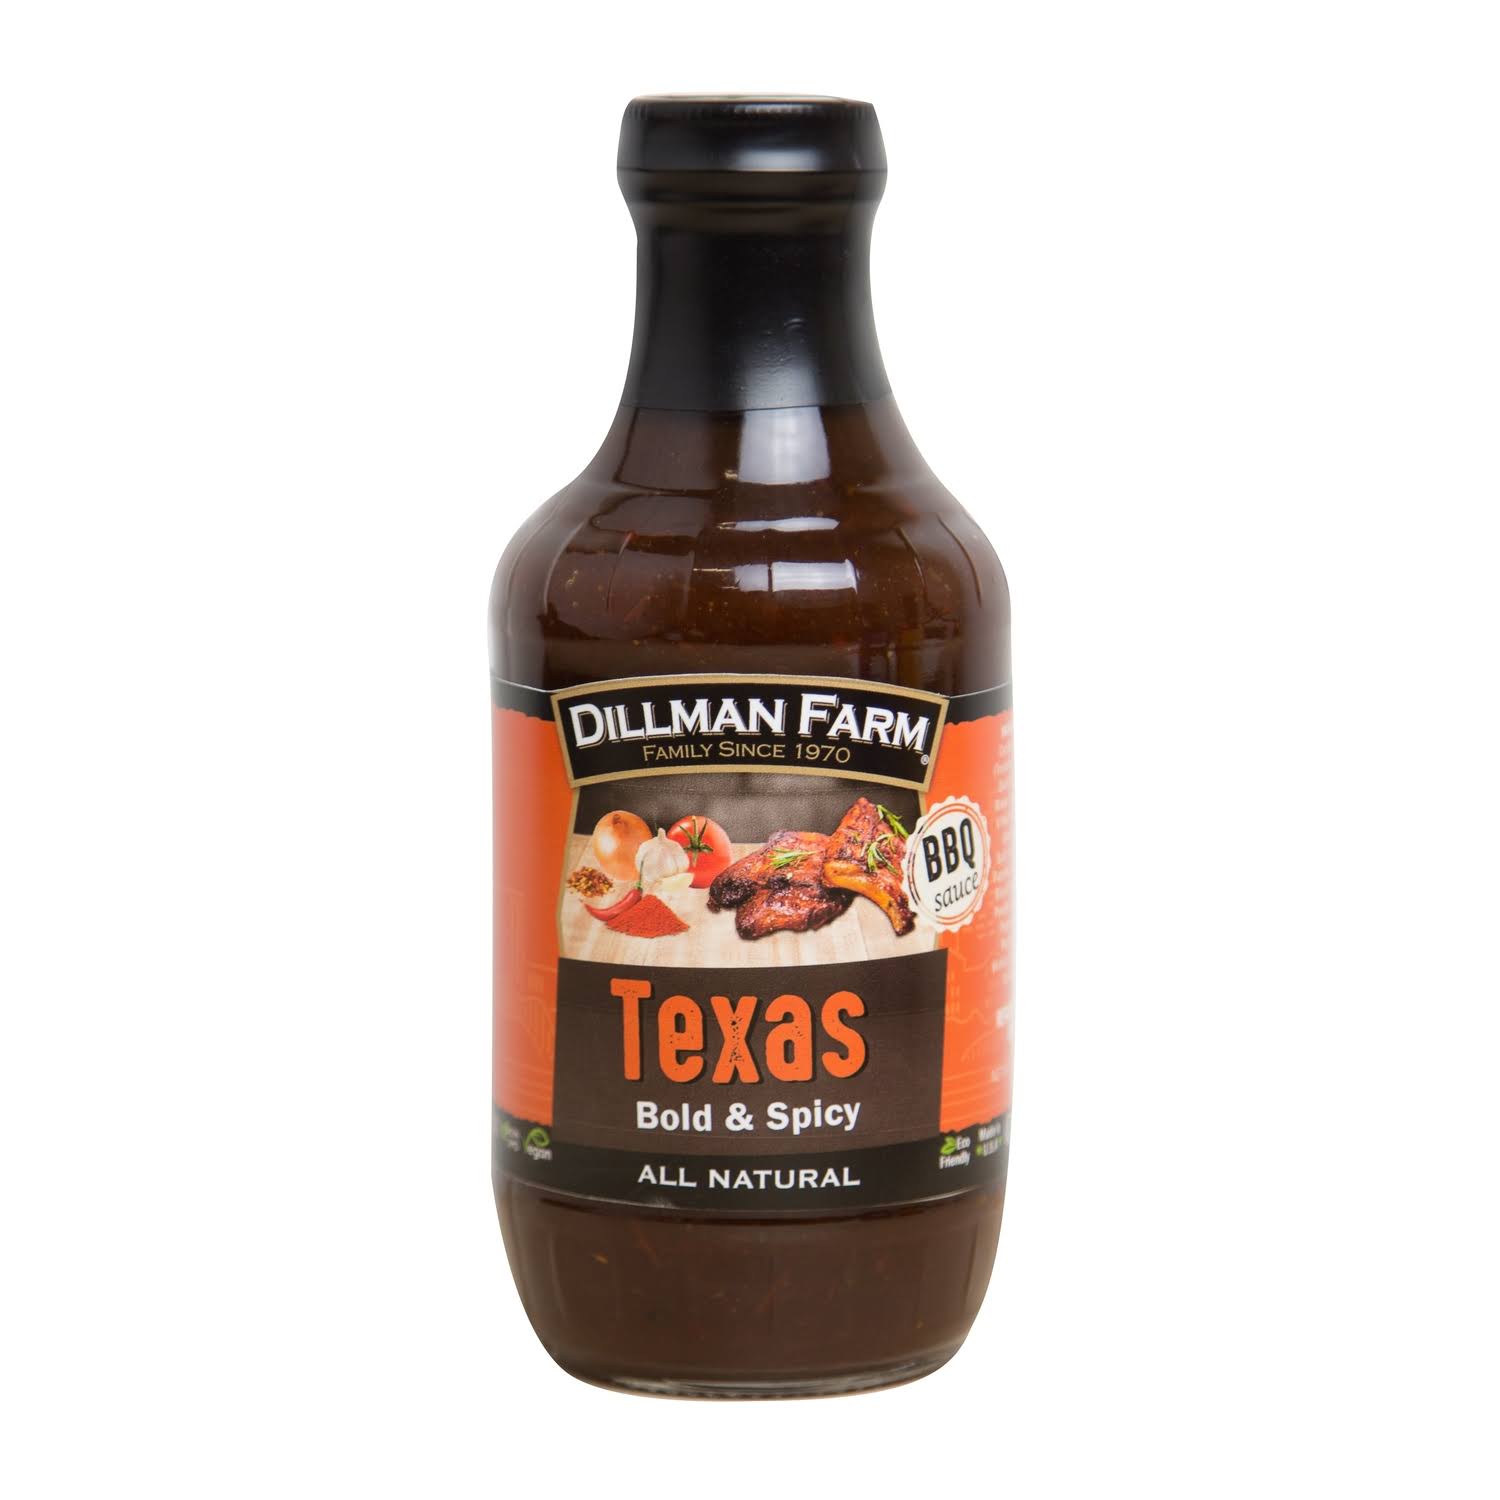 Dillman Farm Texas Barbecue Sauce 19 oz